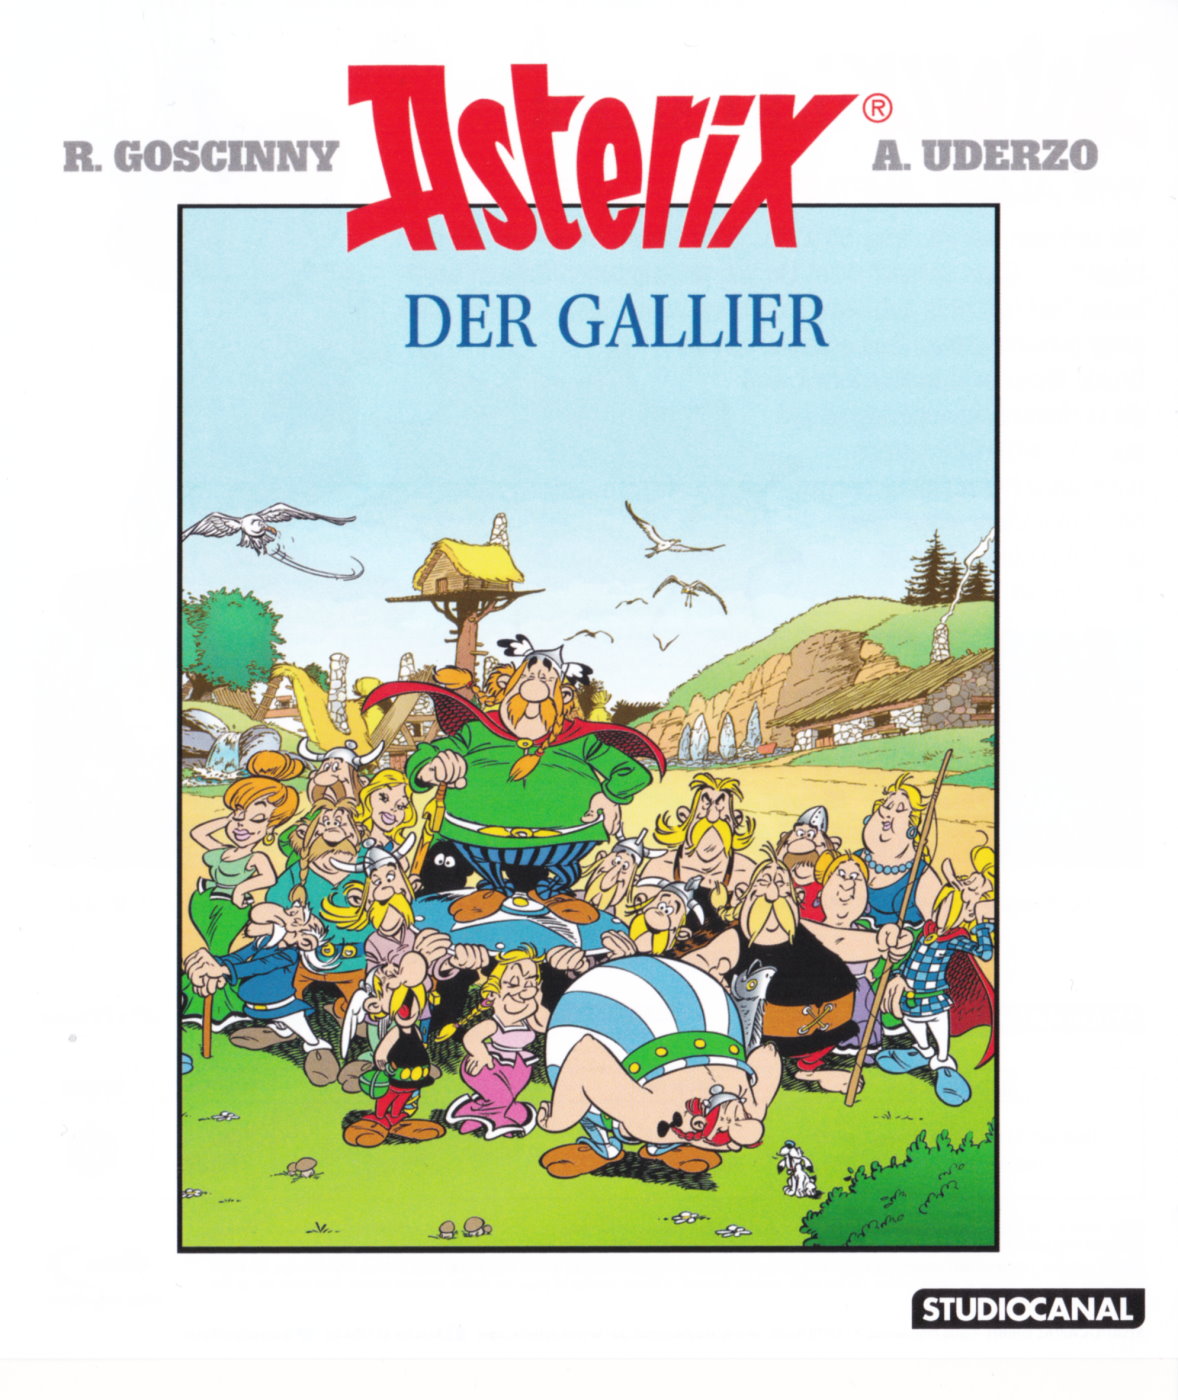 Cover - Asterix der Gallier.jpg